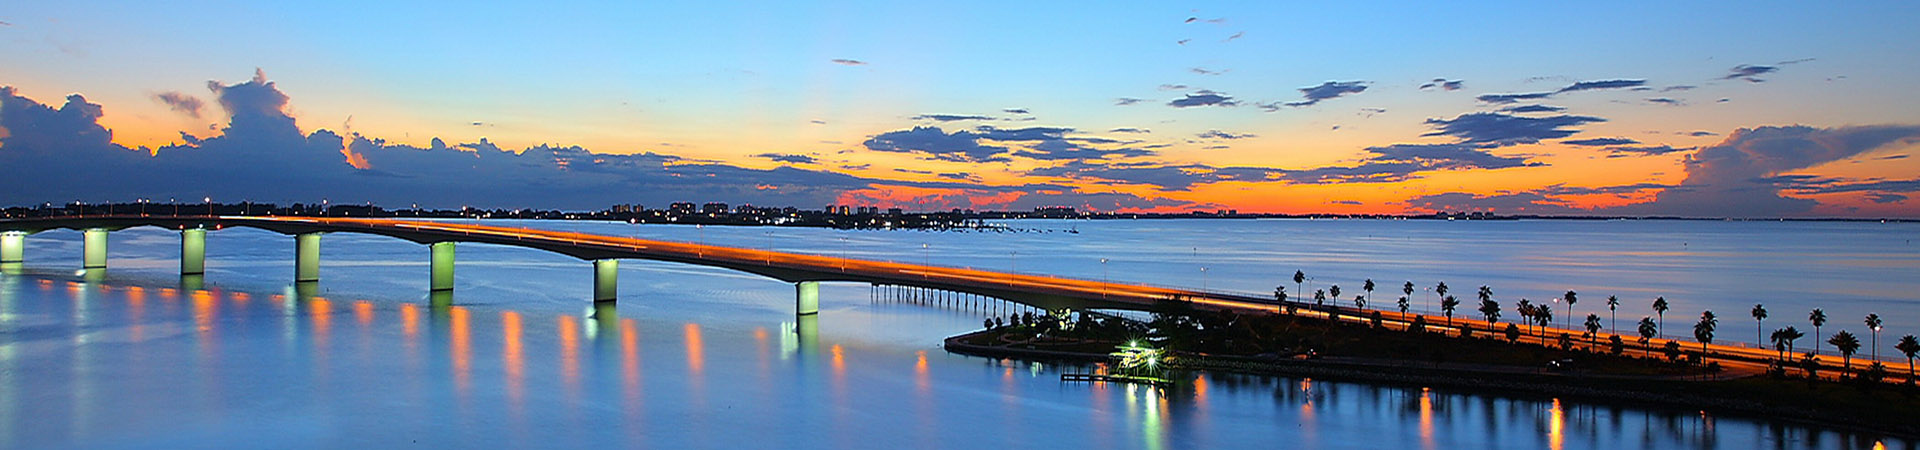 Sarasota bridge and skyline